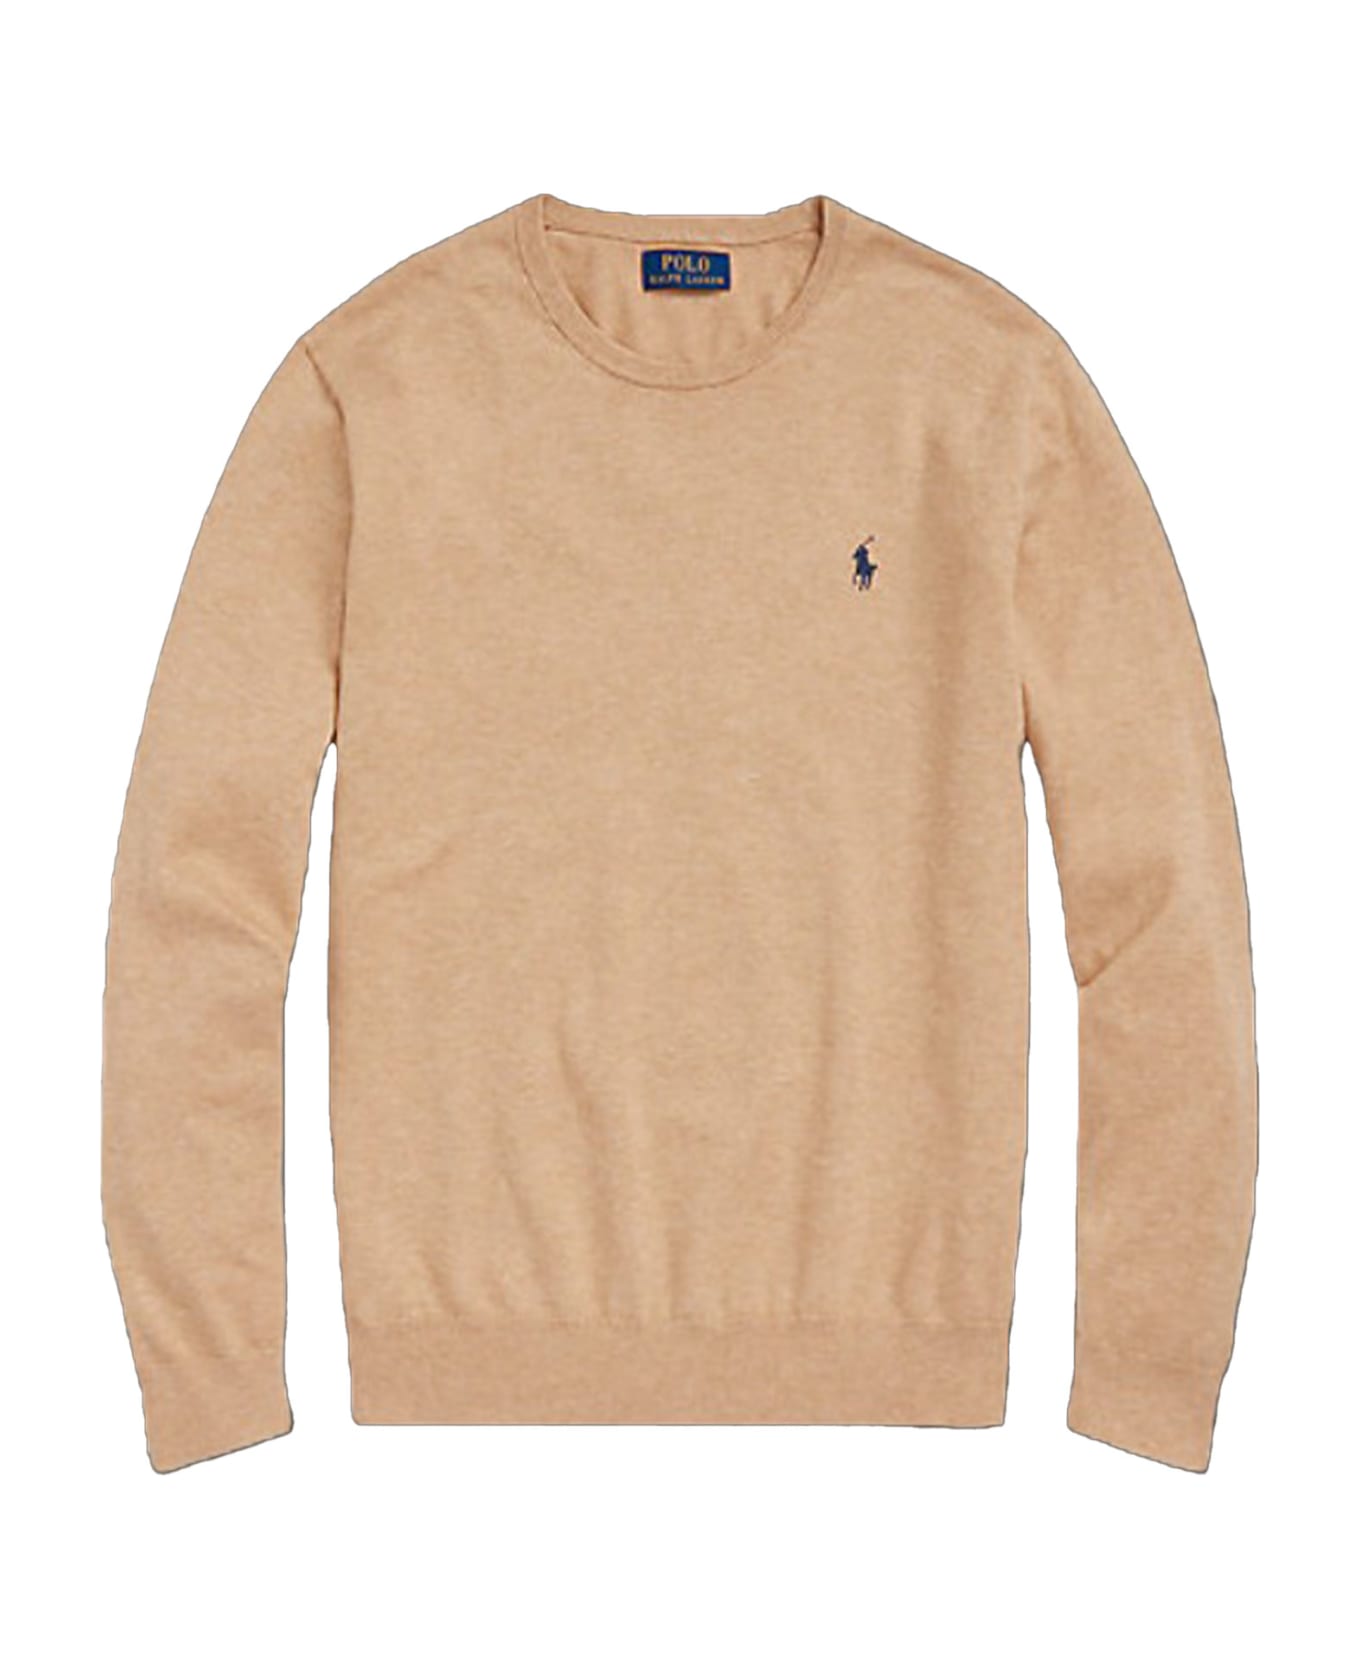 Polo Ralph Lauren Sweater - brown ニットウェア